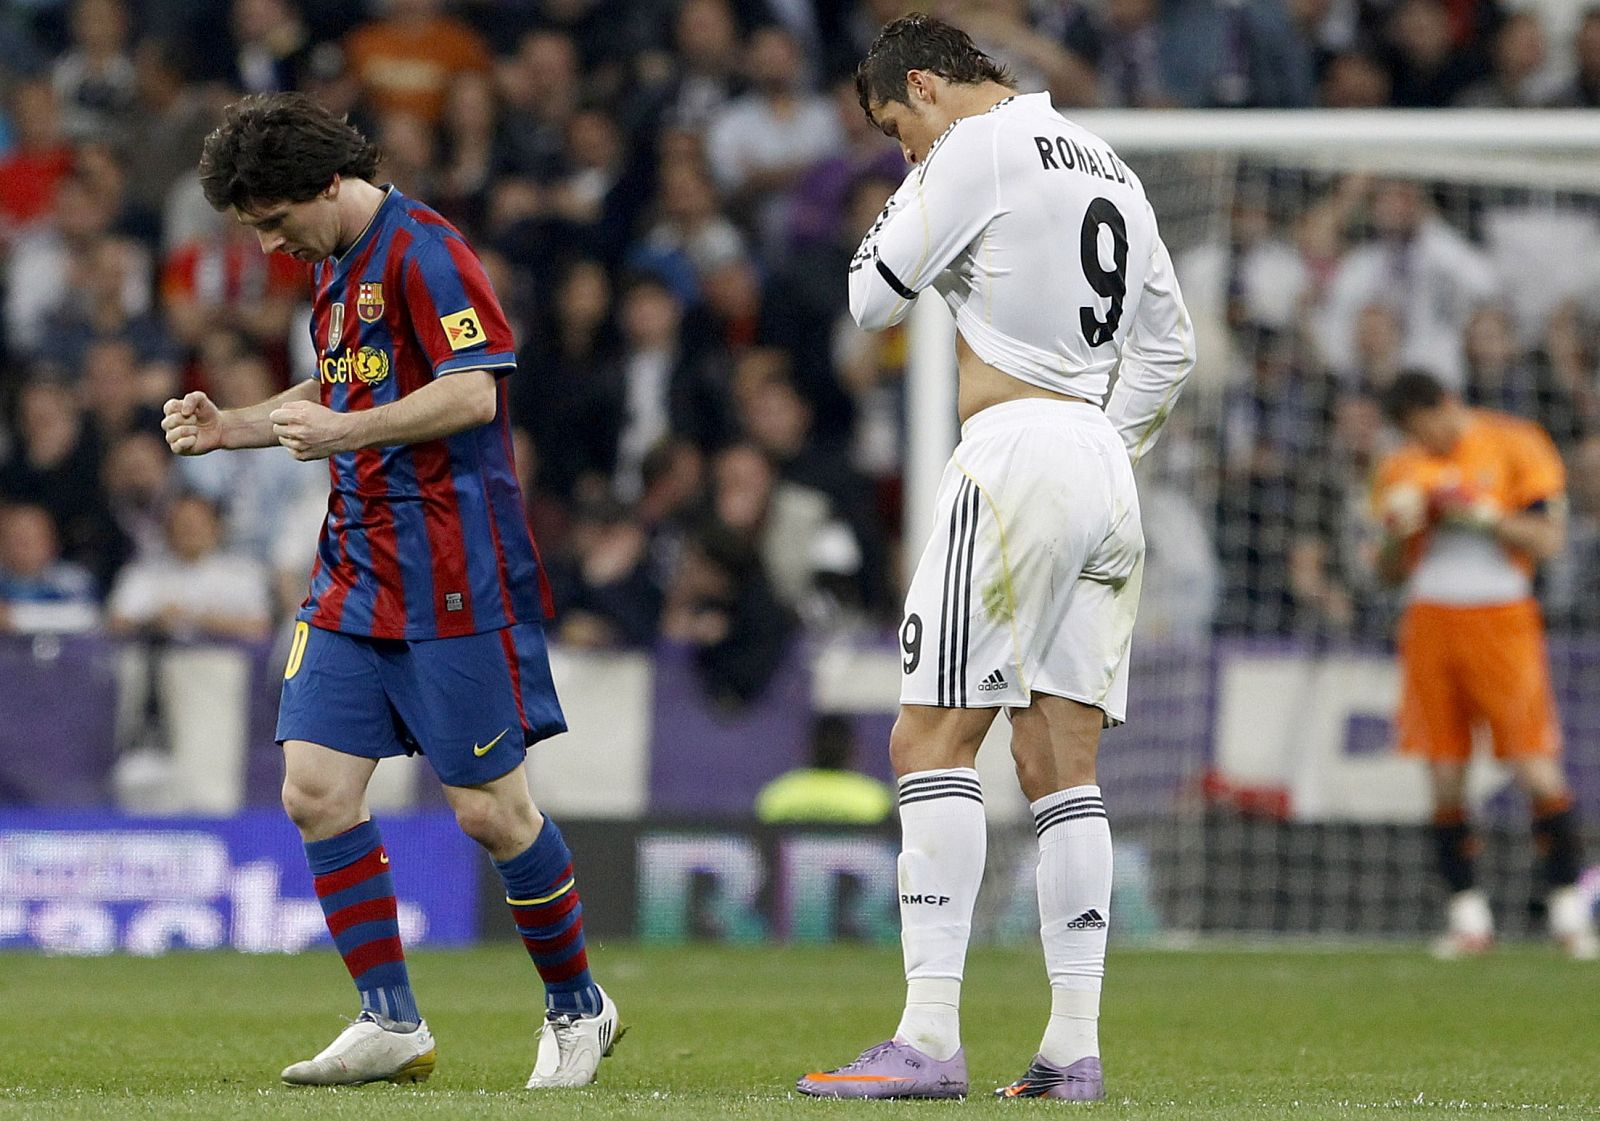 El delantero argentino del Barça, Lionel Messi, celebra un gol contra el Real Madrid  al lado del jugador blanco Cristiano Ronaldo.